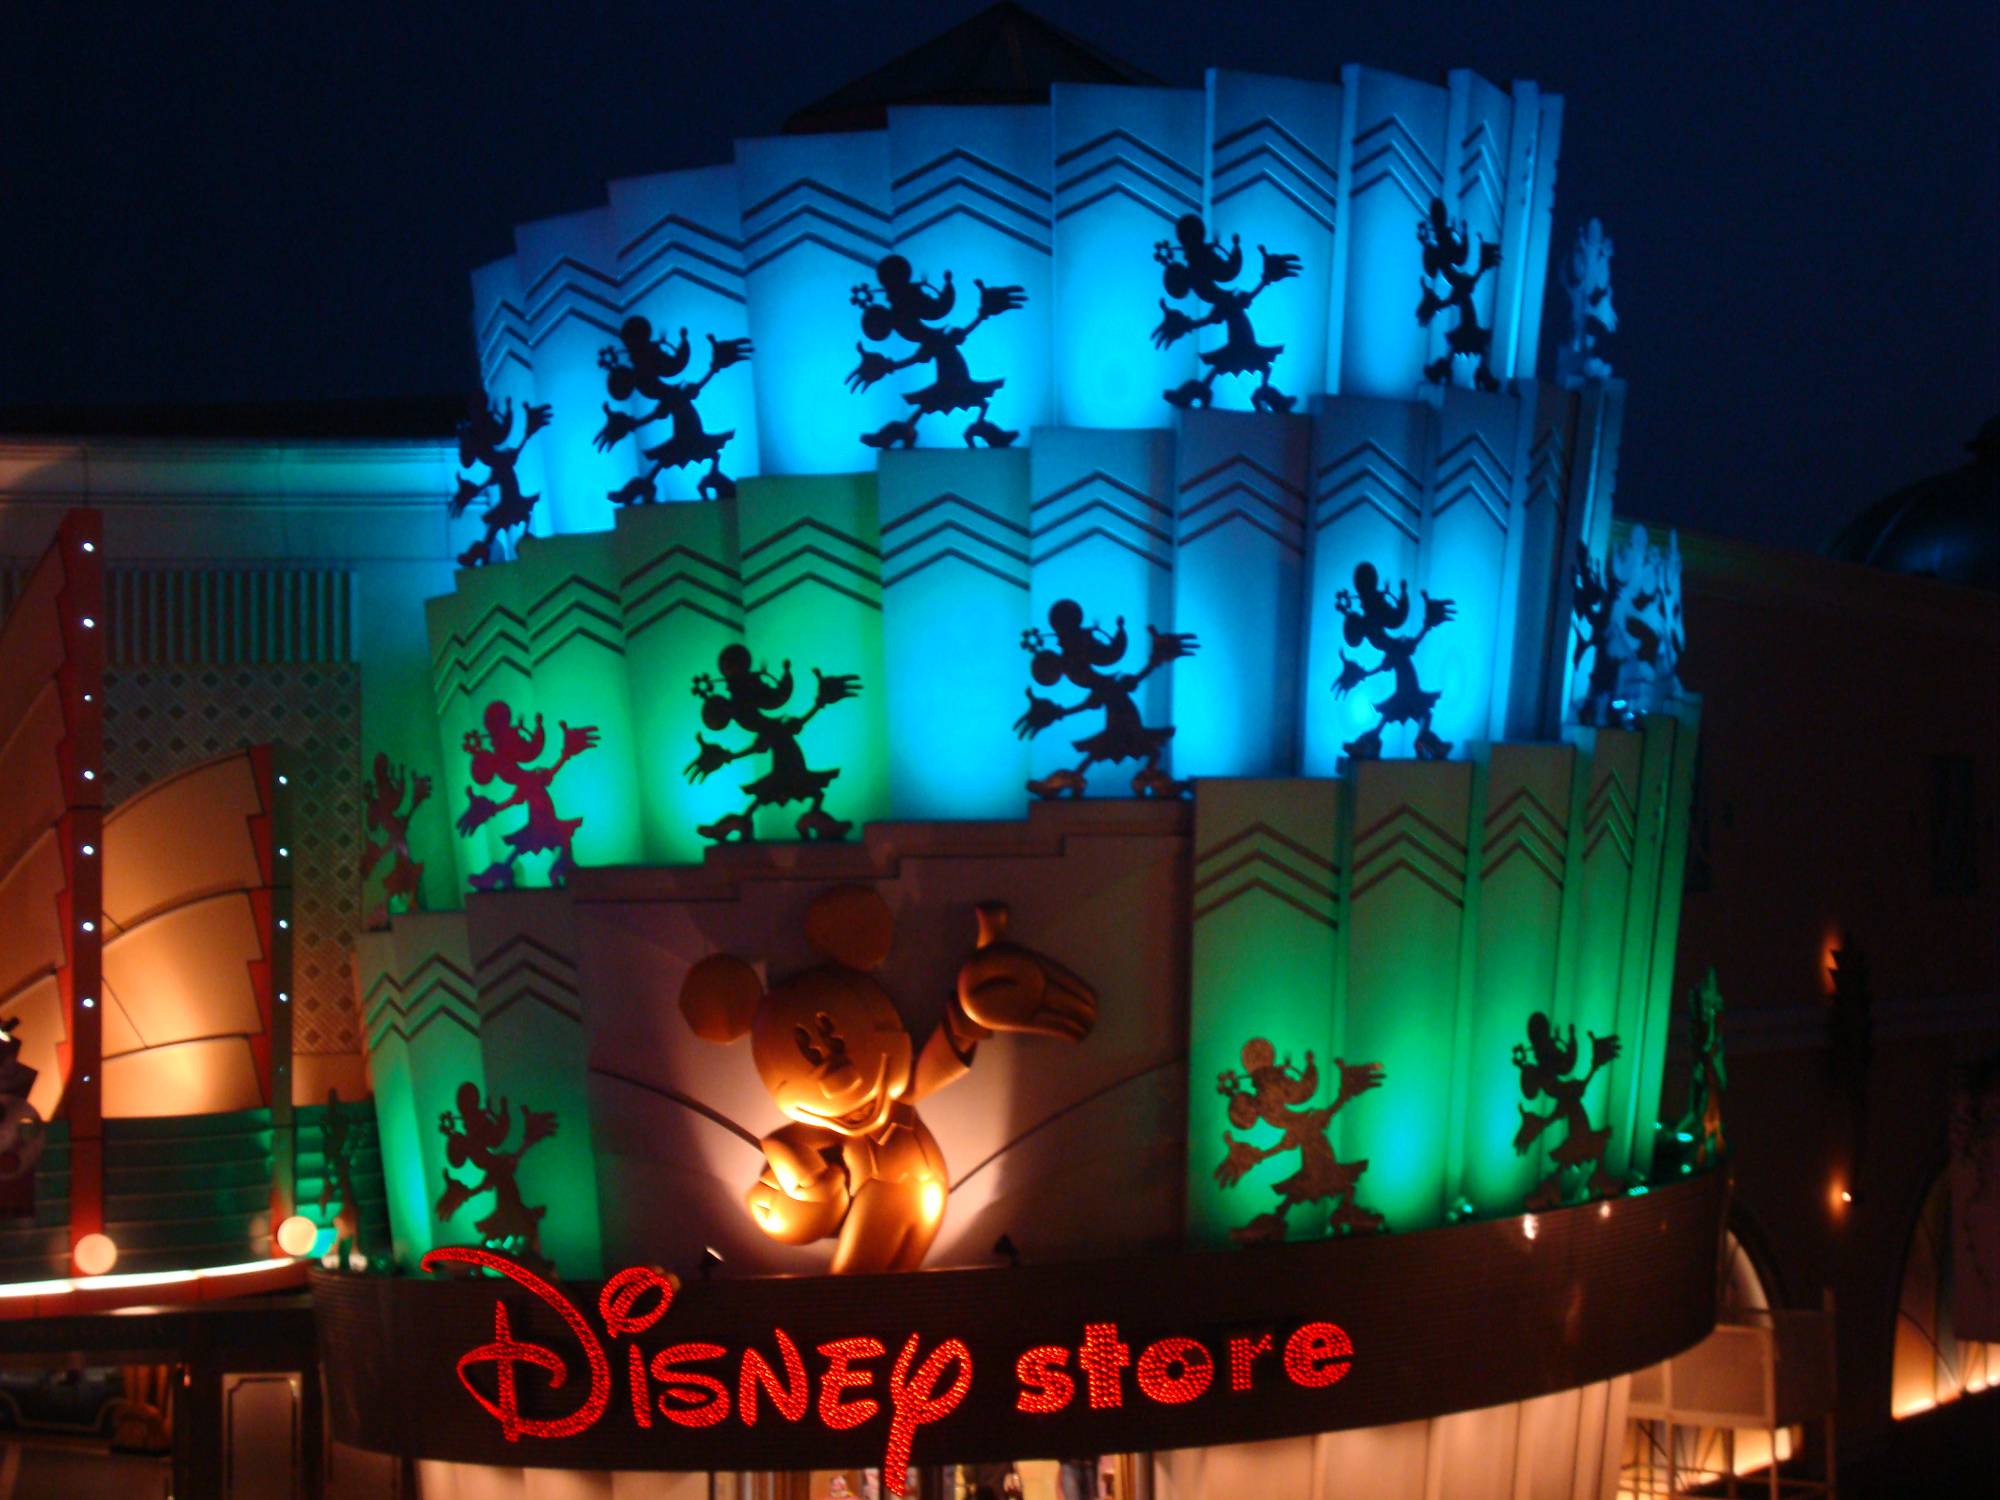 Tokyo Disney - Ikispiari at night